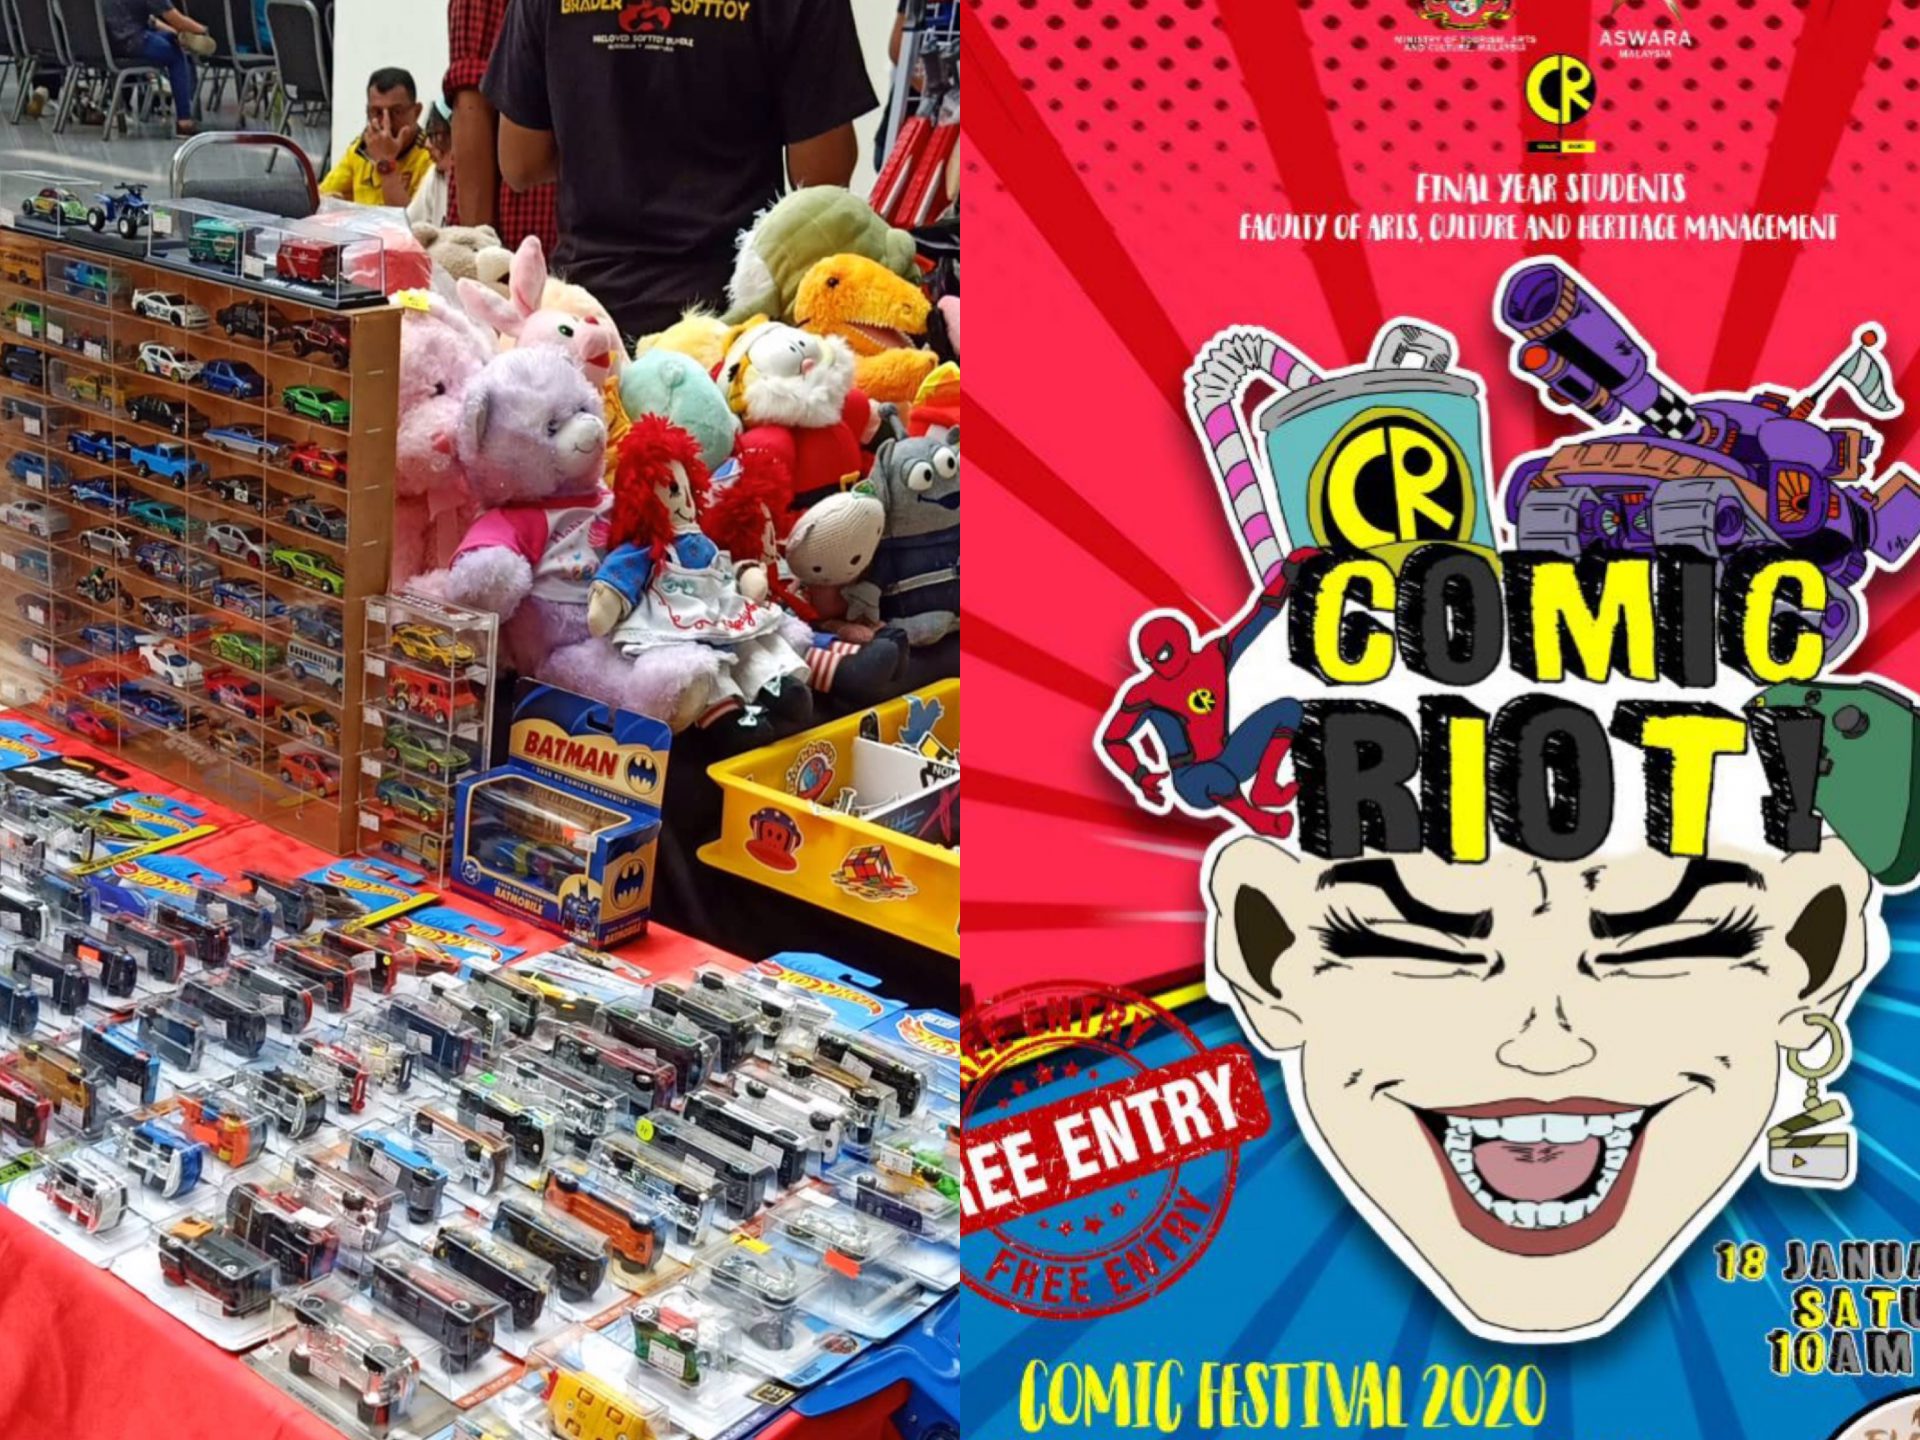 Peminat Komik Serbu Festival Comic Riot! Di KL Hari Ini, Masuk Percuma